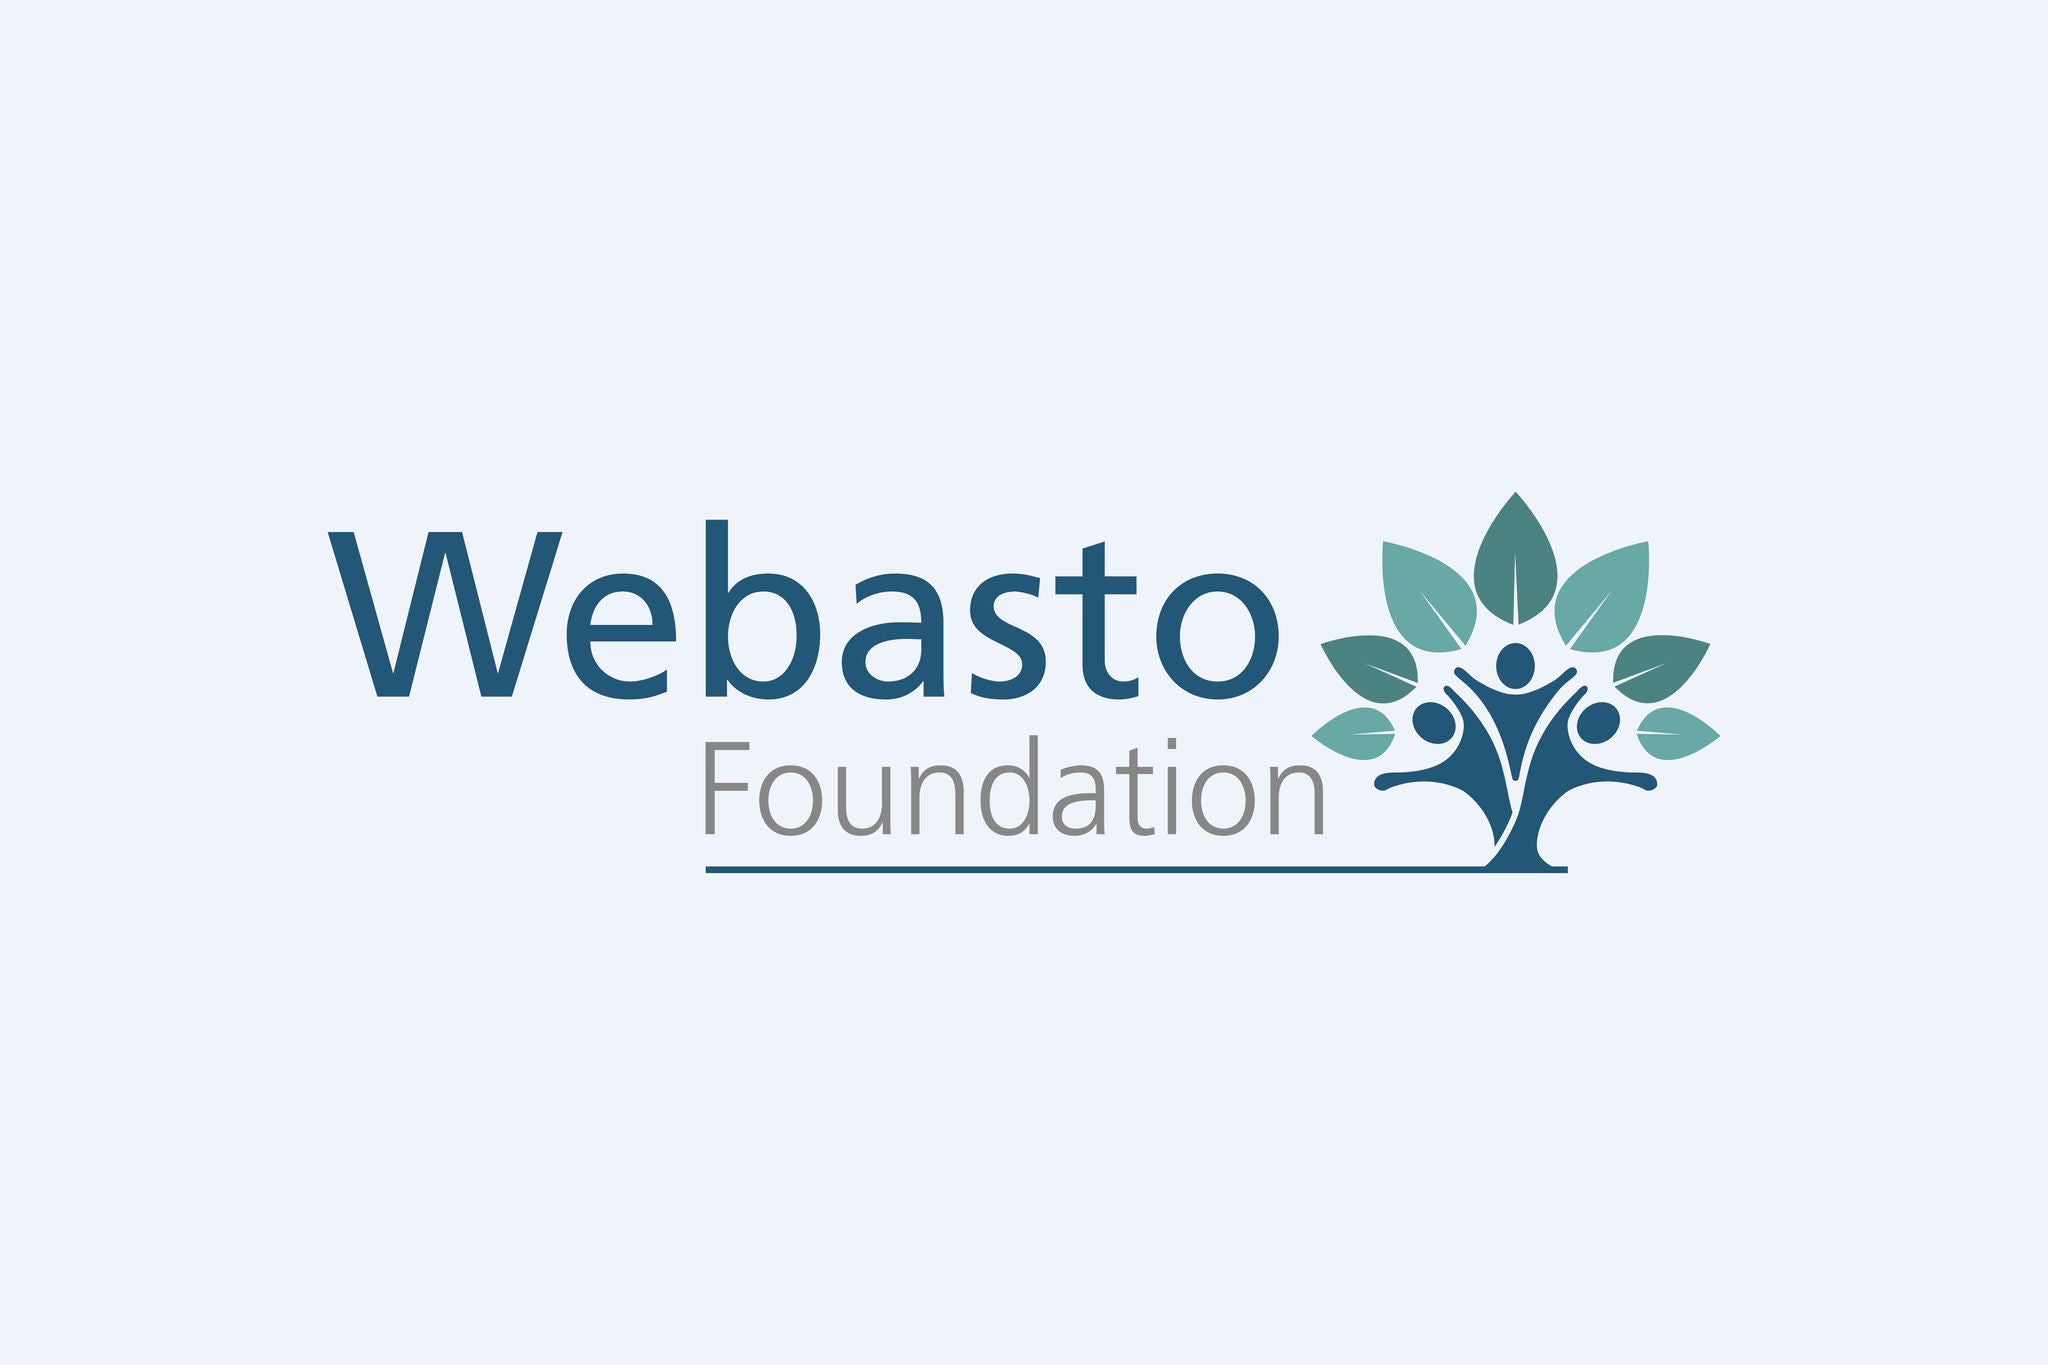 Webasto Foundation - Society & engagement